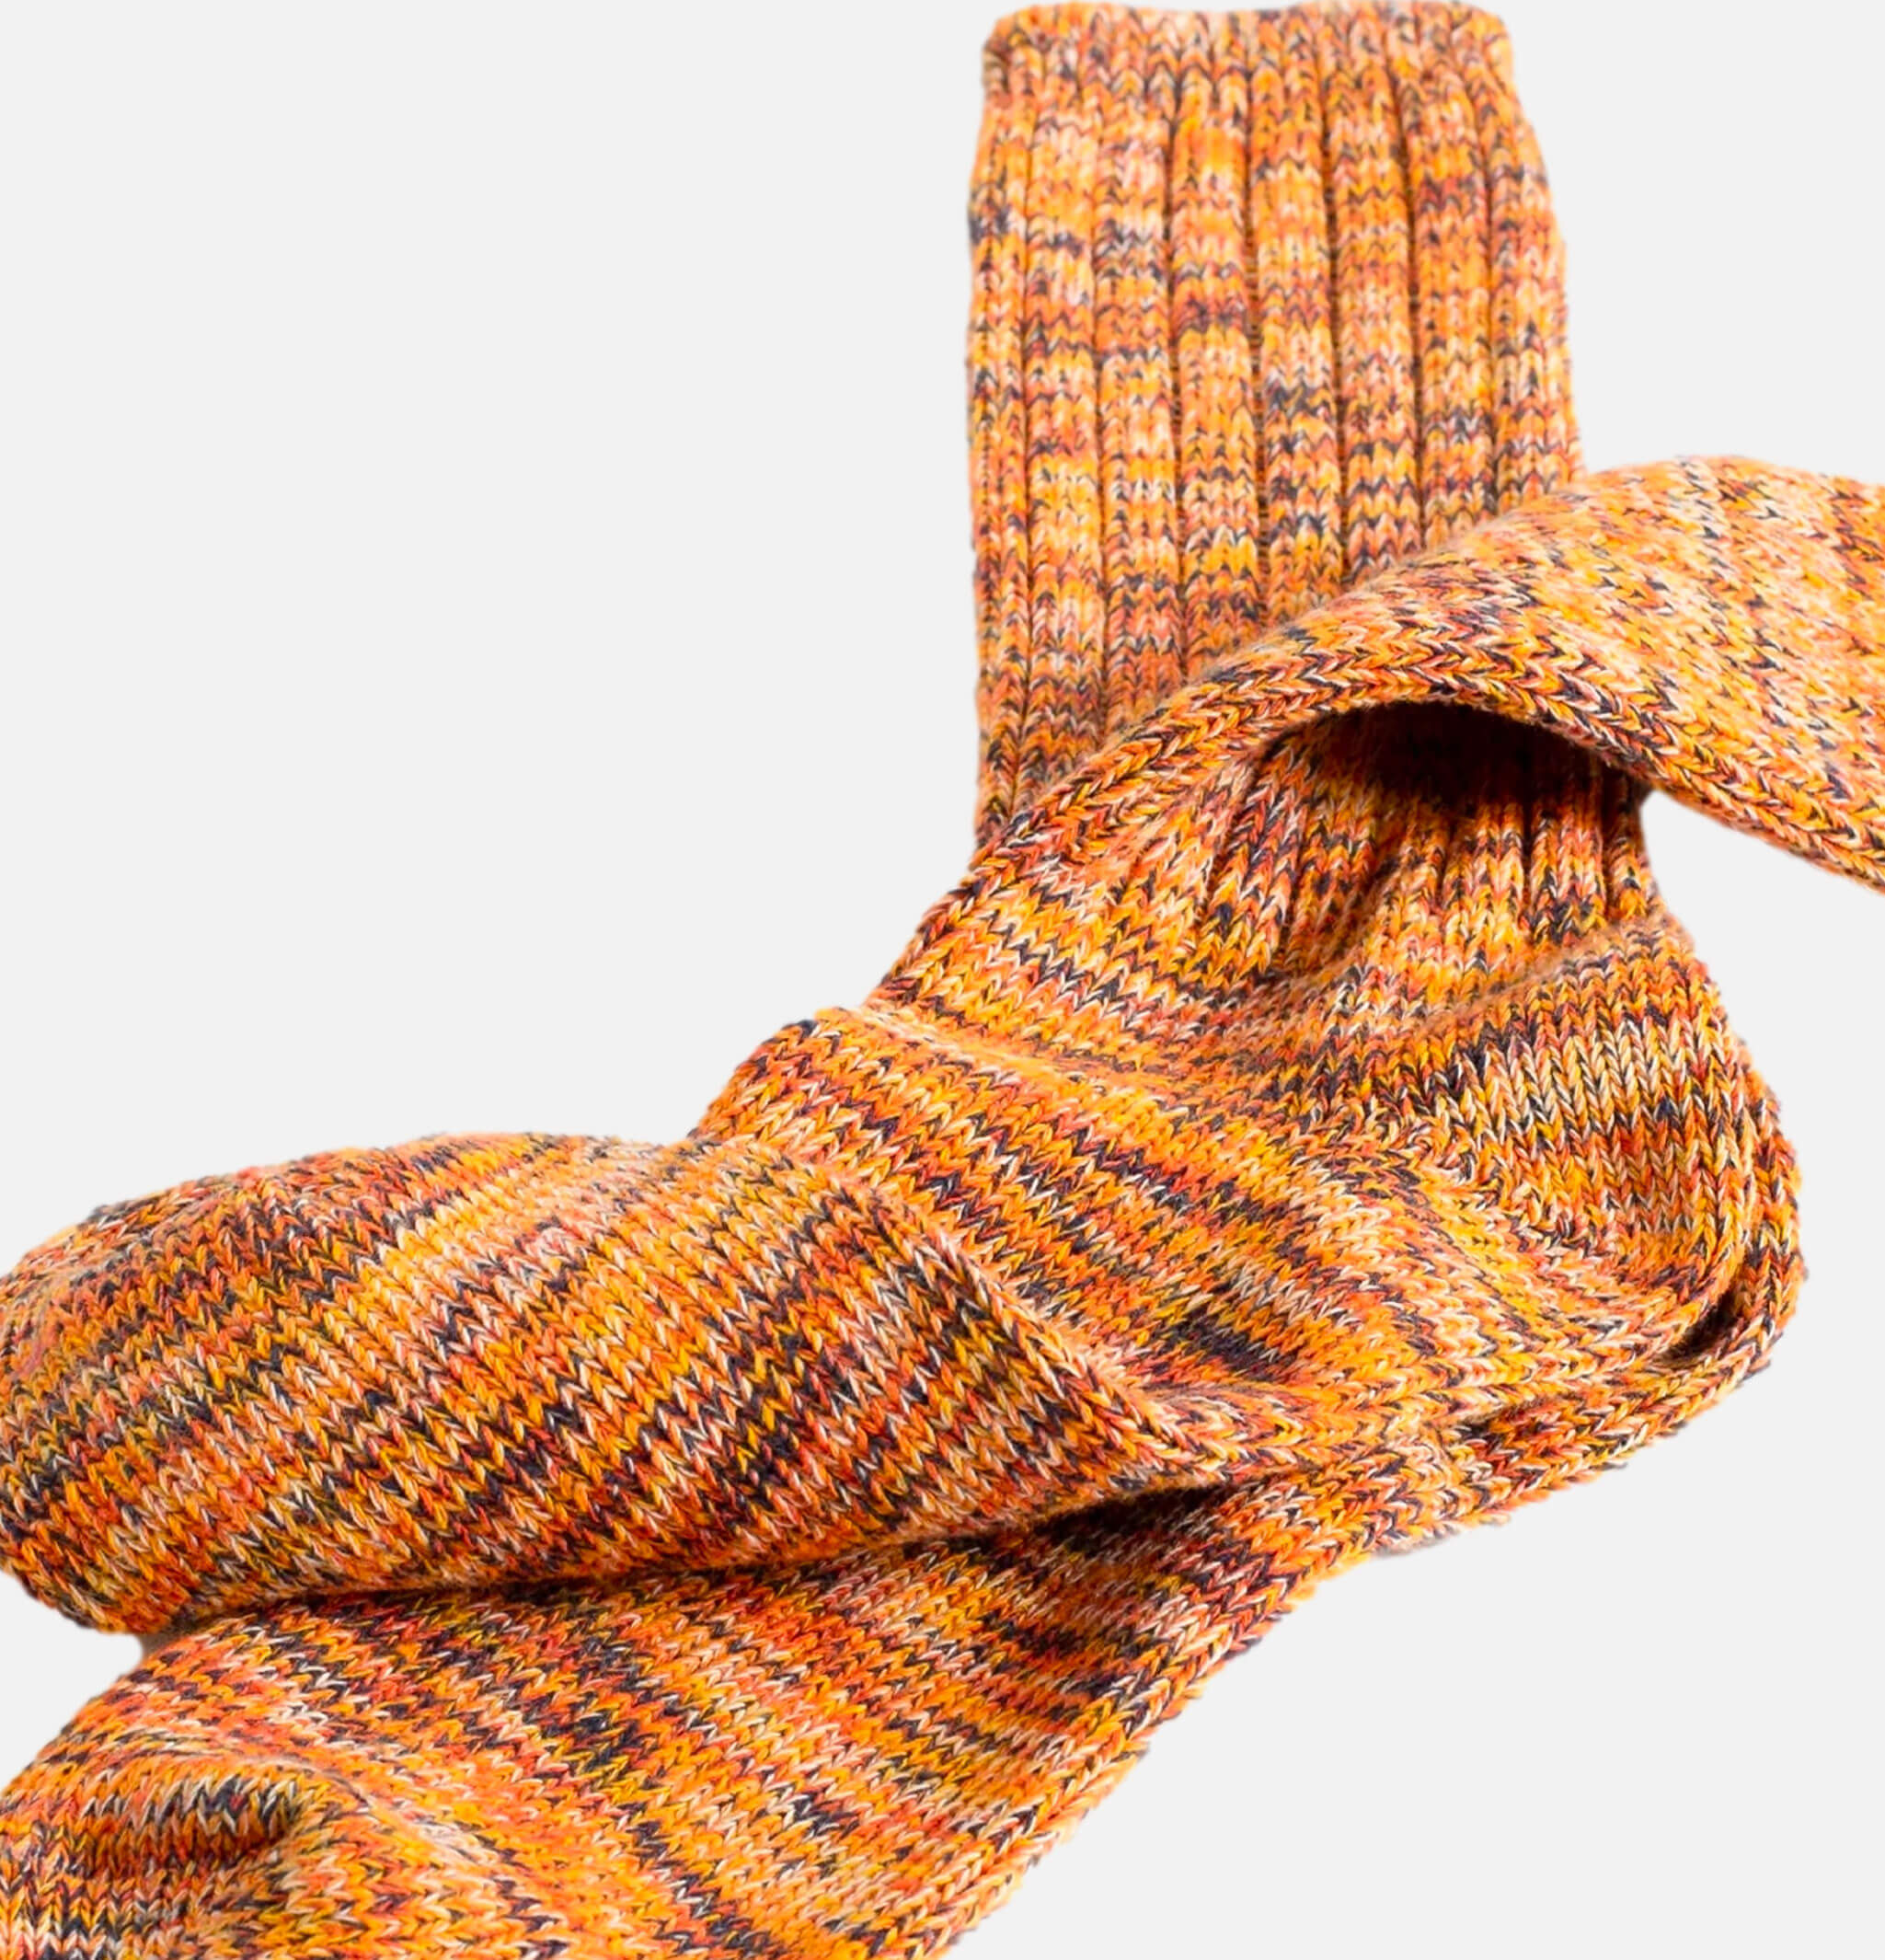 Socks blend orange